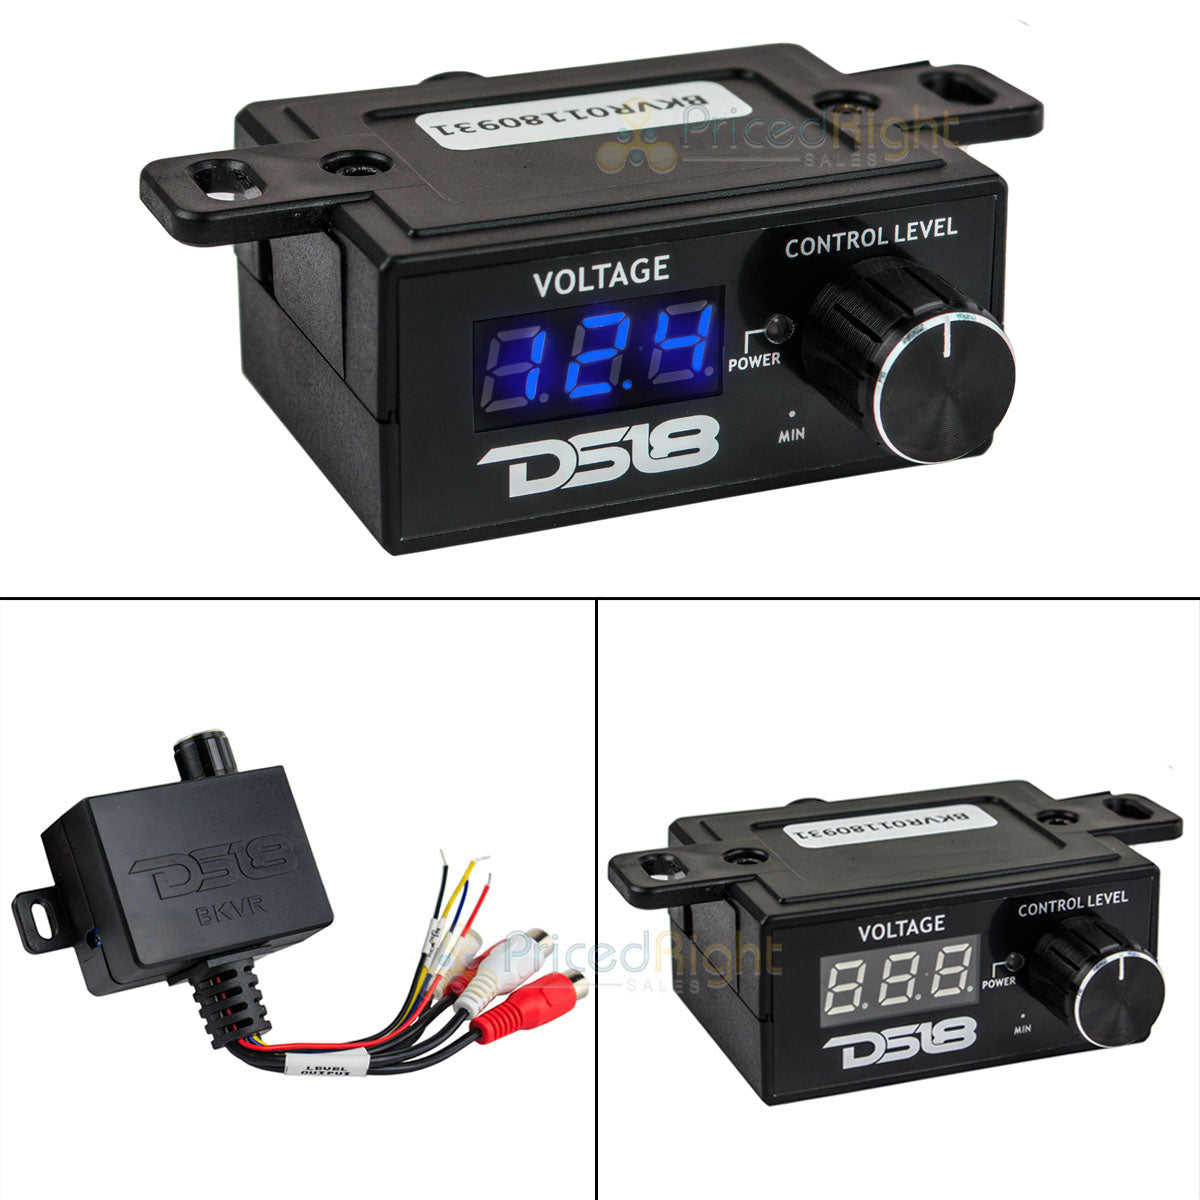 DS18 BK VR BKVR Remote Amplifier Level Controller with LED Volt-Meter Bass Knob